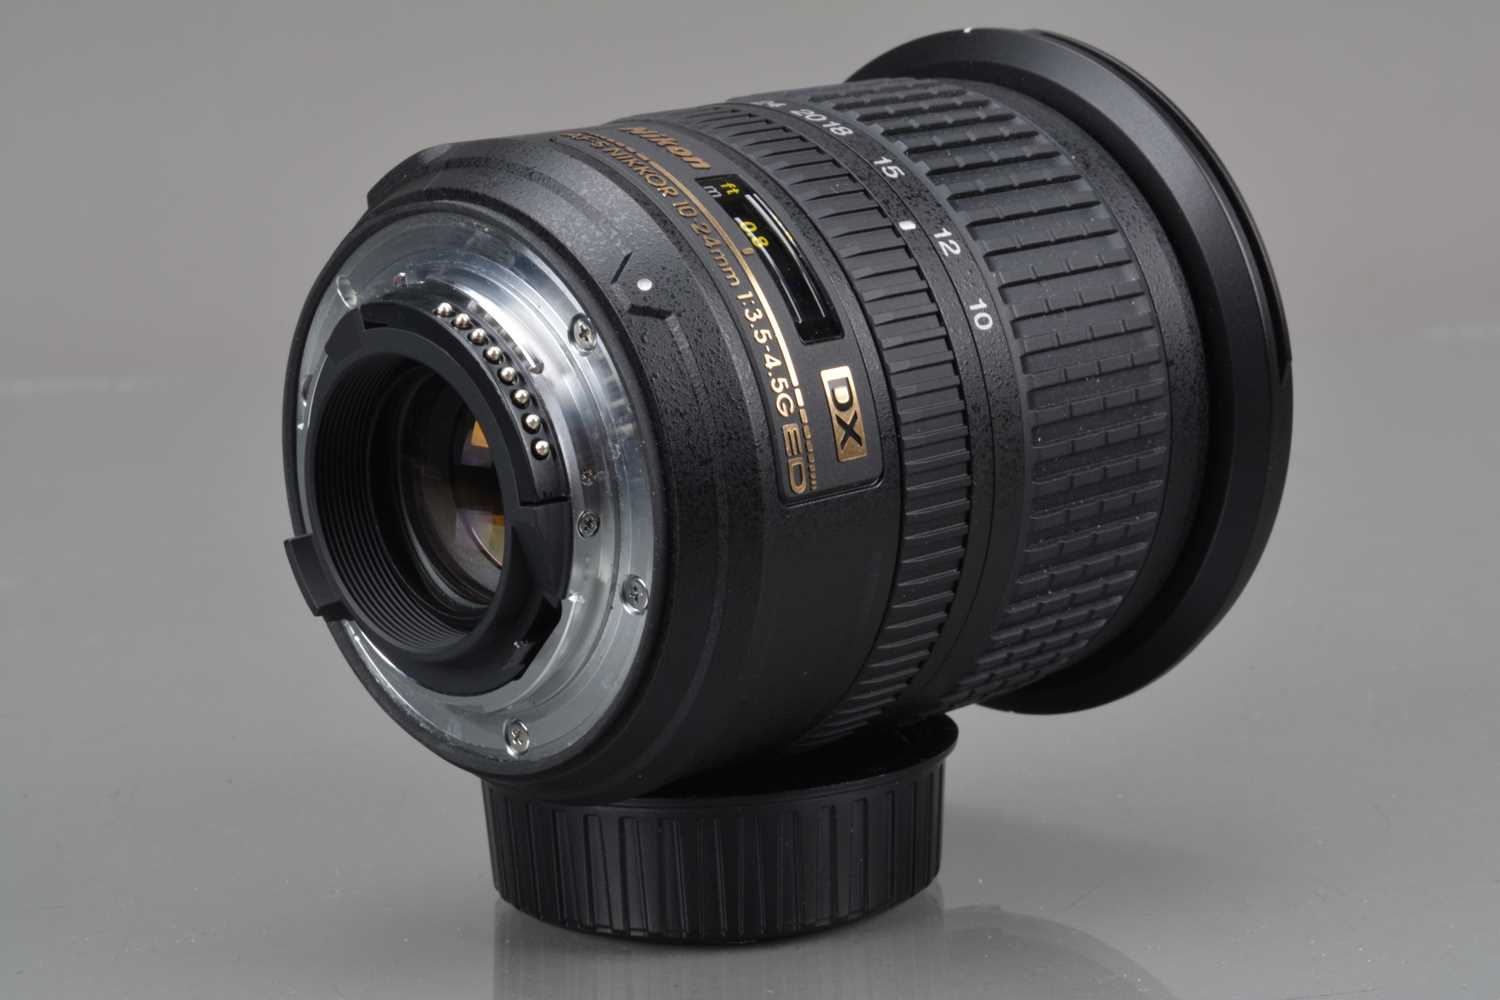 A Nikon AF-S DX Nikkor 10-24mm f/3.5-4.5G ED Lens, - Image 2 of 2